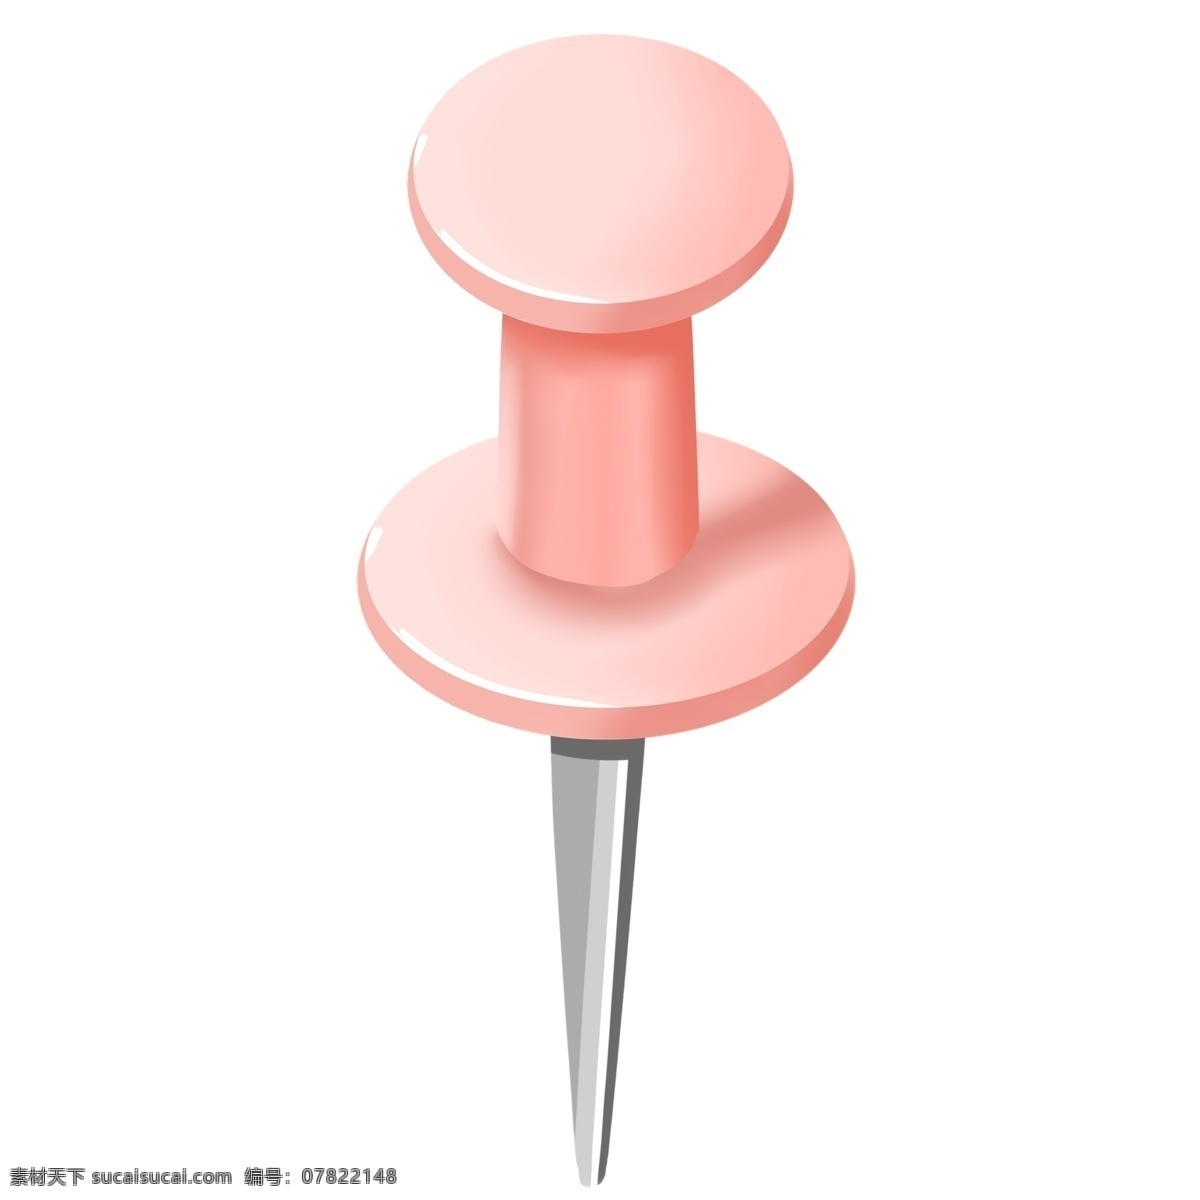 粉色尖形图钉 图钉 钉子 工具